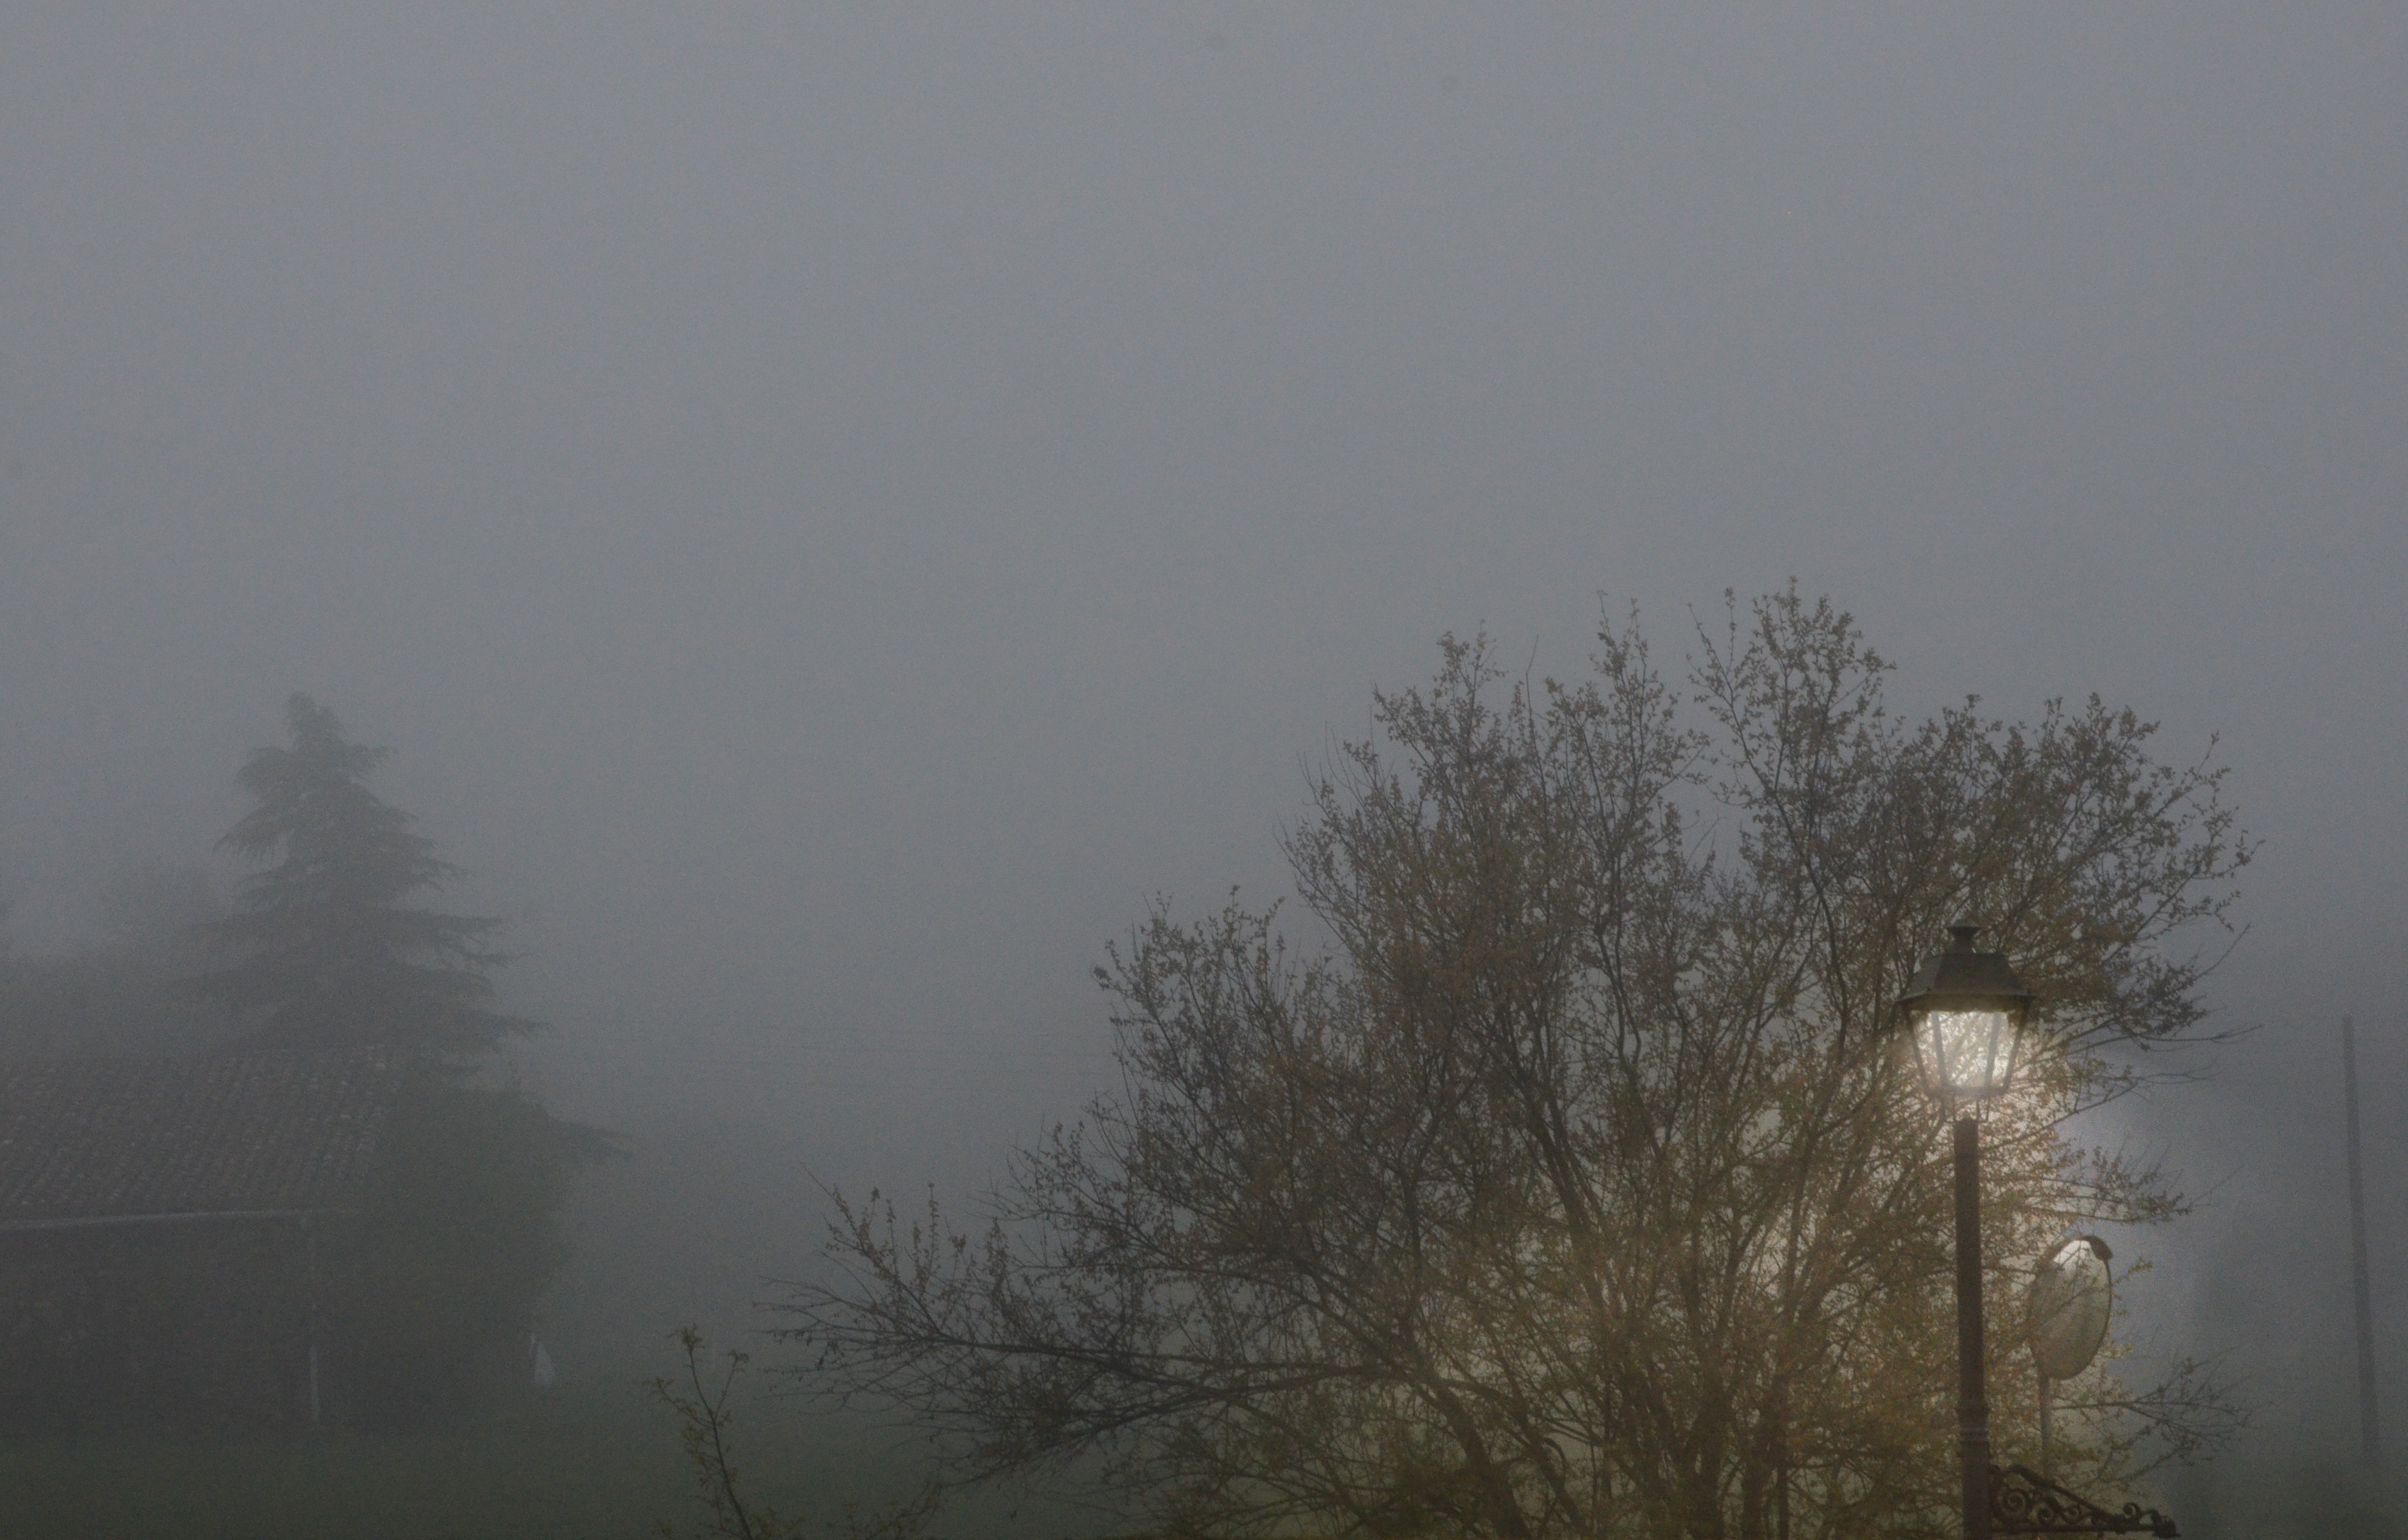 Un paisaje neblinoso, completamente cerrado. A la derecha, vemos una farola encendida que ilumina las ramas de un árbol. Al fondo se divisan entre la niebla un caserío y un pino.